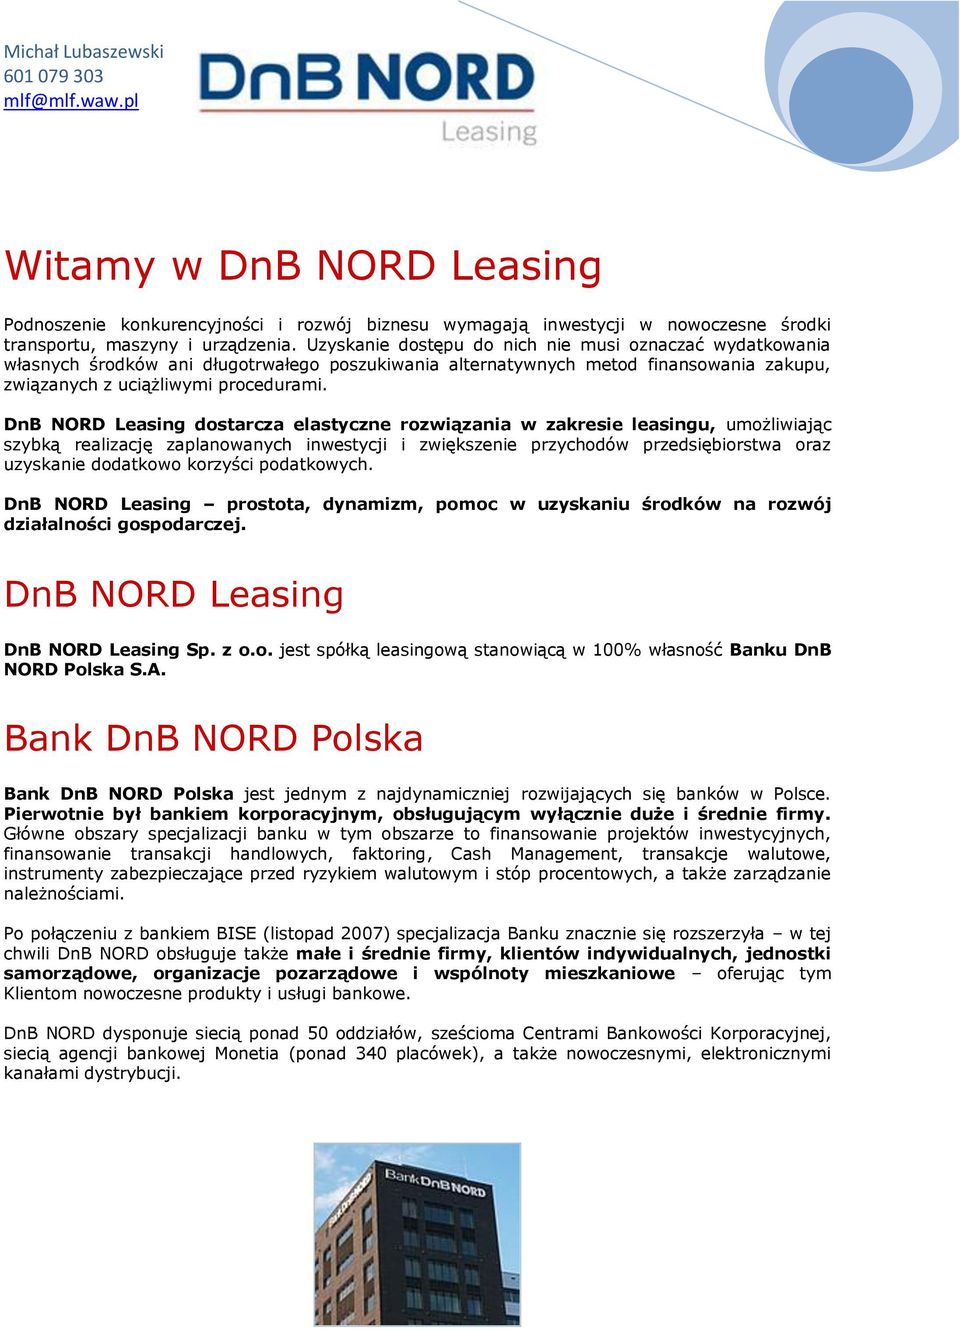 DnB NORD Leasing dostarcza elastyczne rozwiązania w zakresie leasingu, umożliwiając szybką realizację zaplanowanych inwestycji i zwiększenie przychodów przedsiębiorstwa oraz uzyskanie dodatkowo